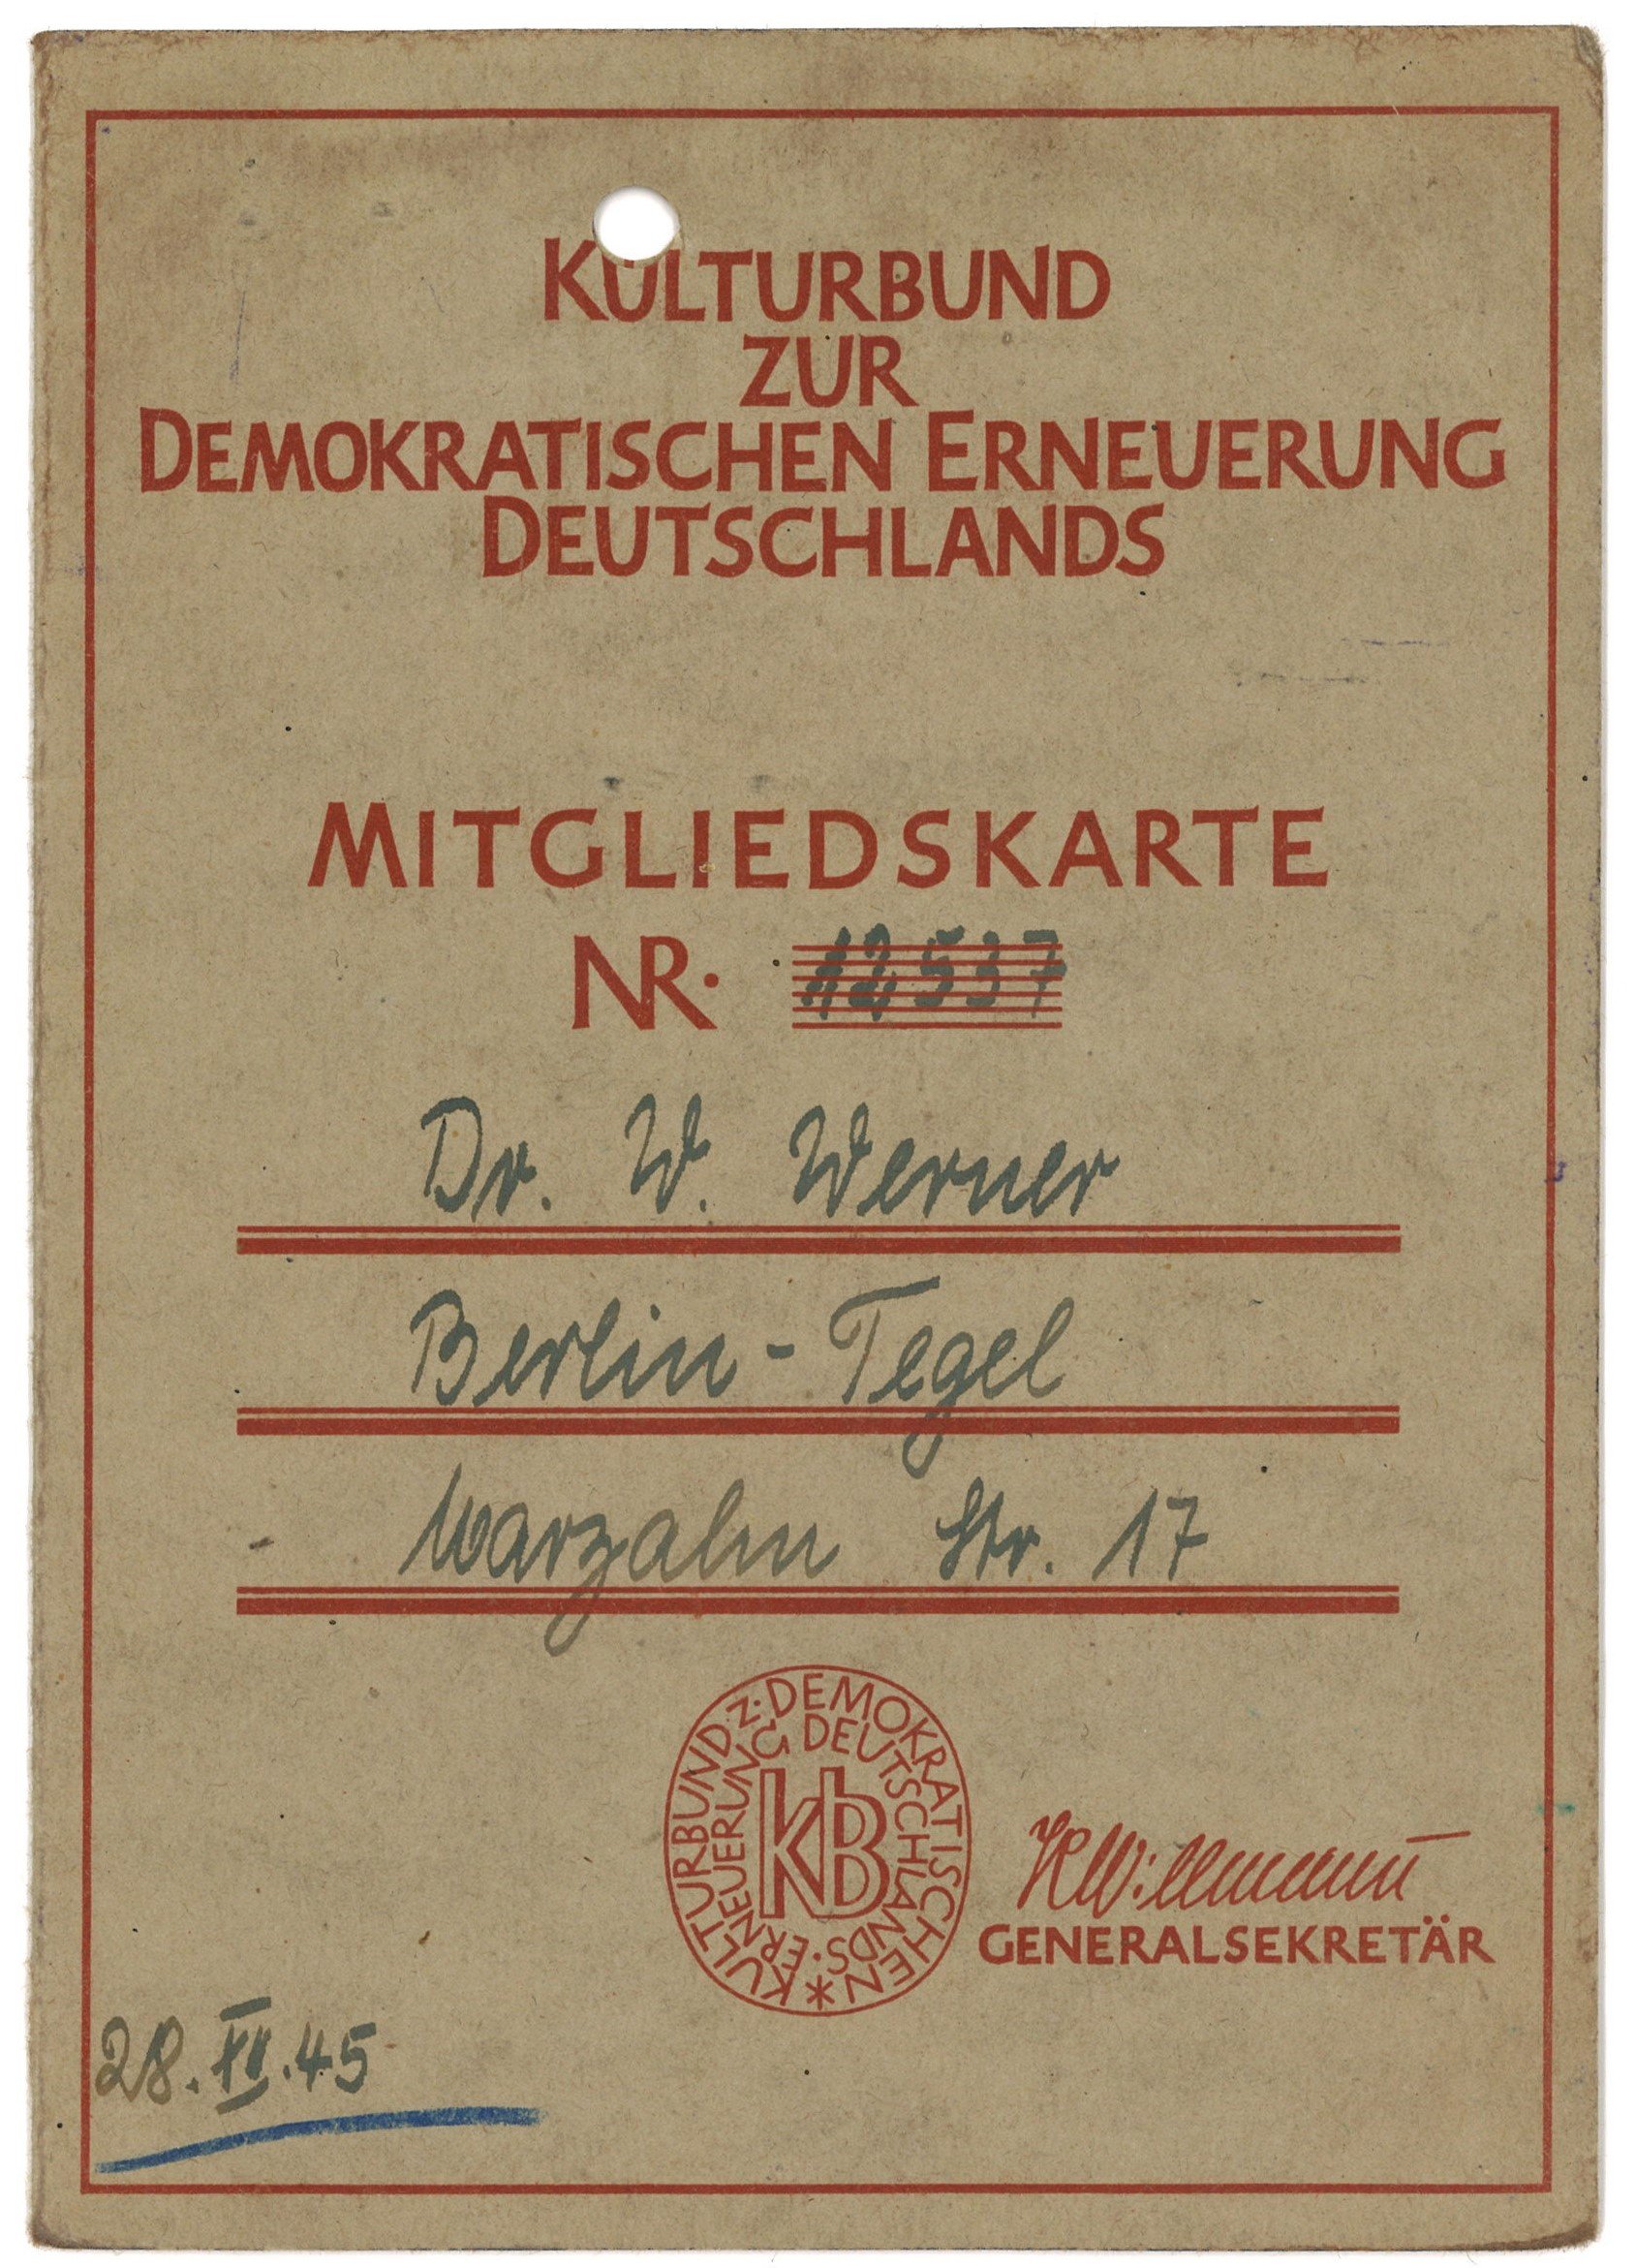 Mitgliedskarte des Kulturbundes für Dr. Wilhelm Werner in Berlin-Tegel 1945–1946 (Landesgeschichtliche Vereinigung für die Mark Brandenburg e.V., Archiv CC BY)